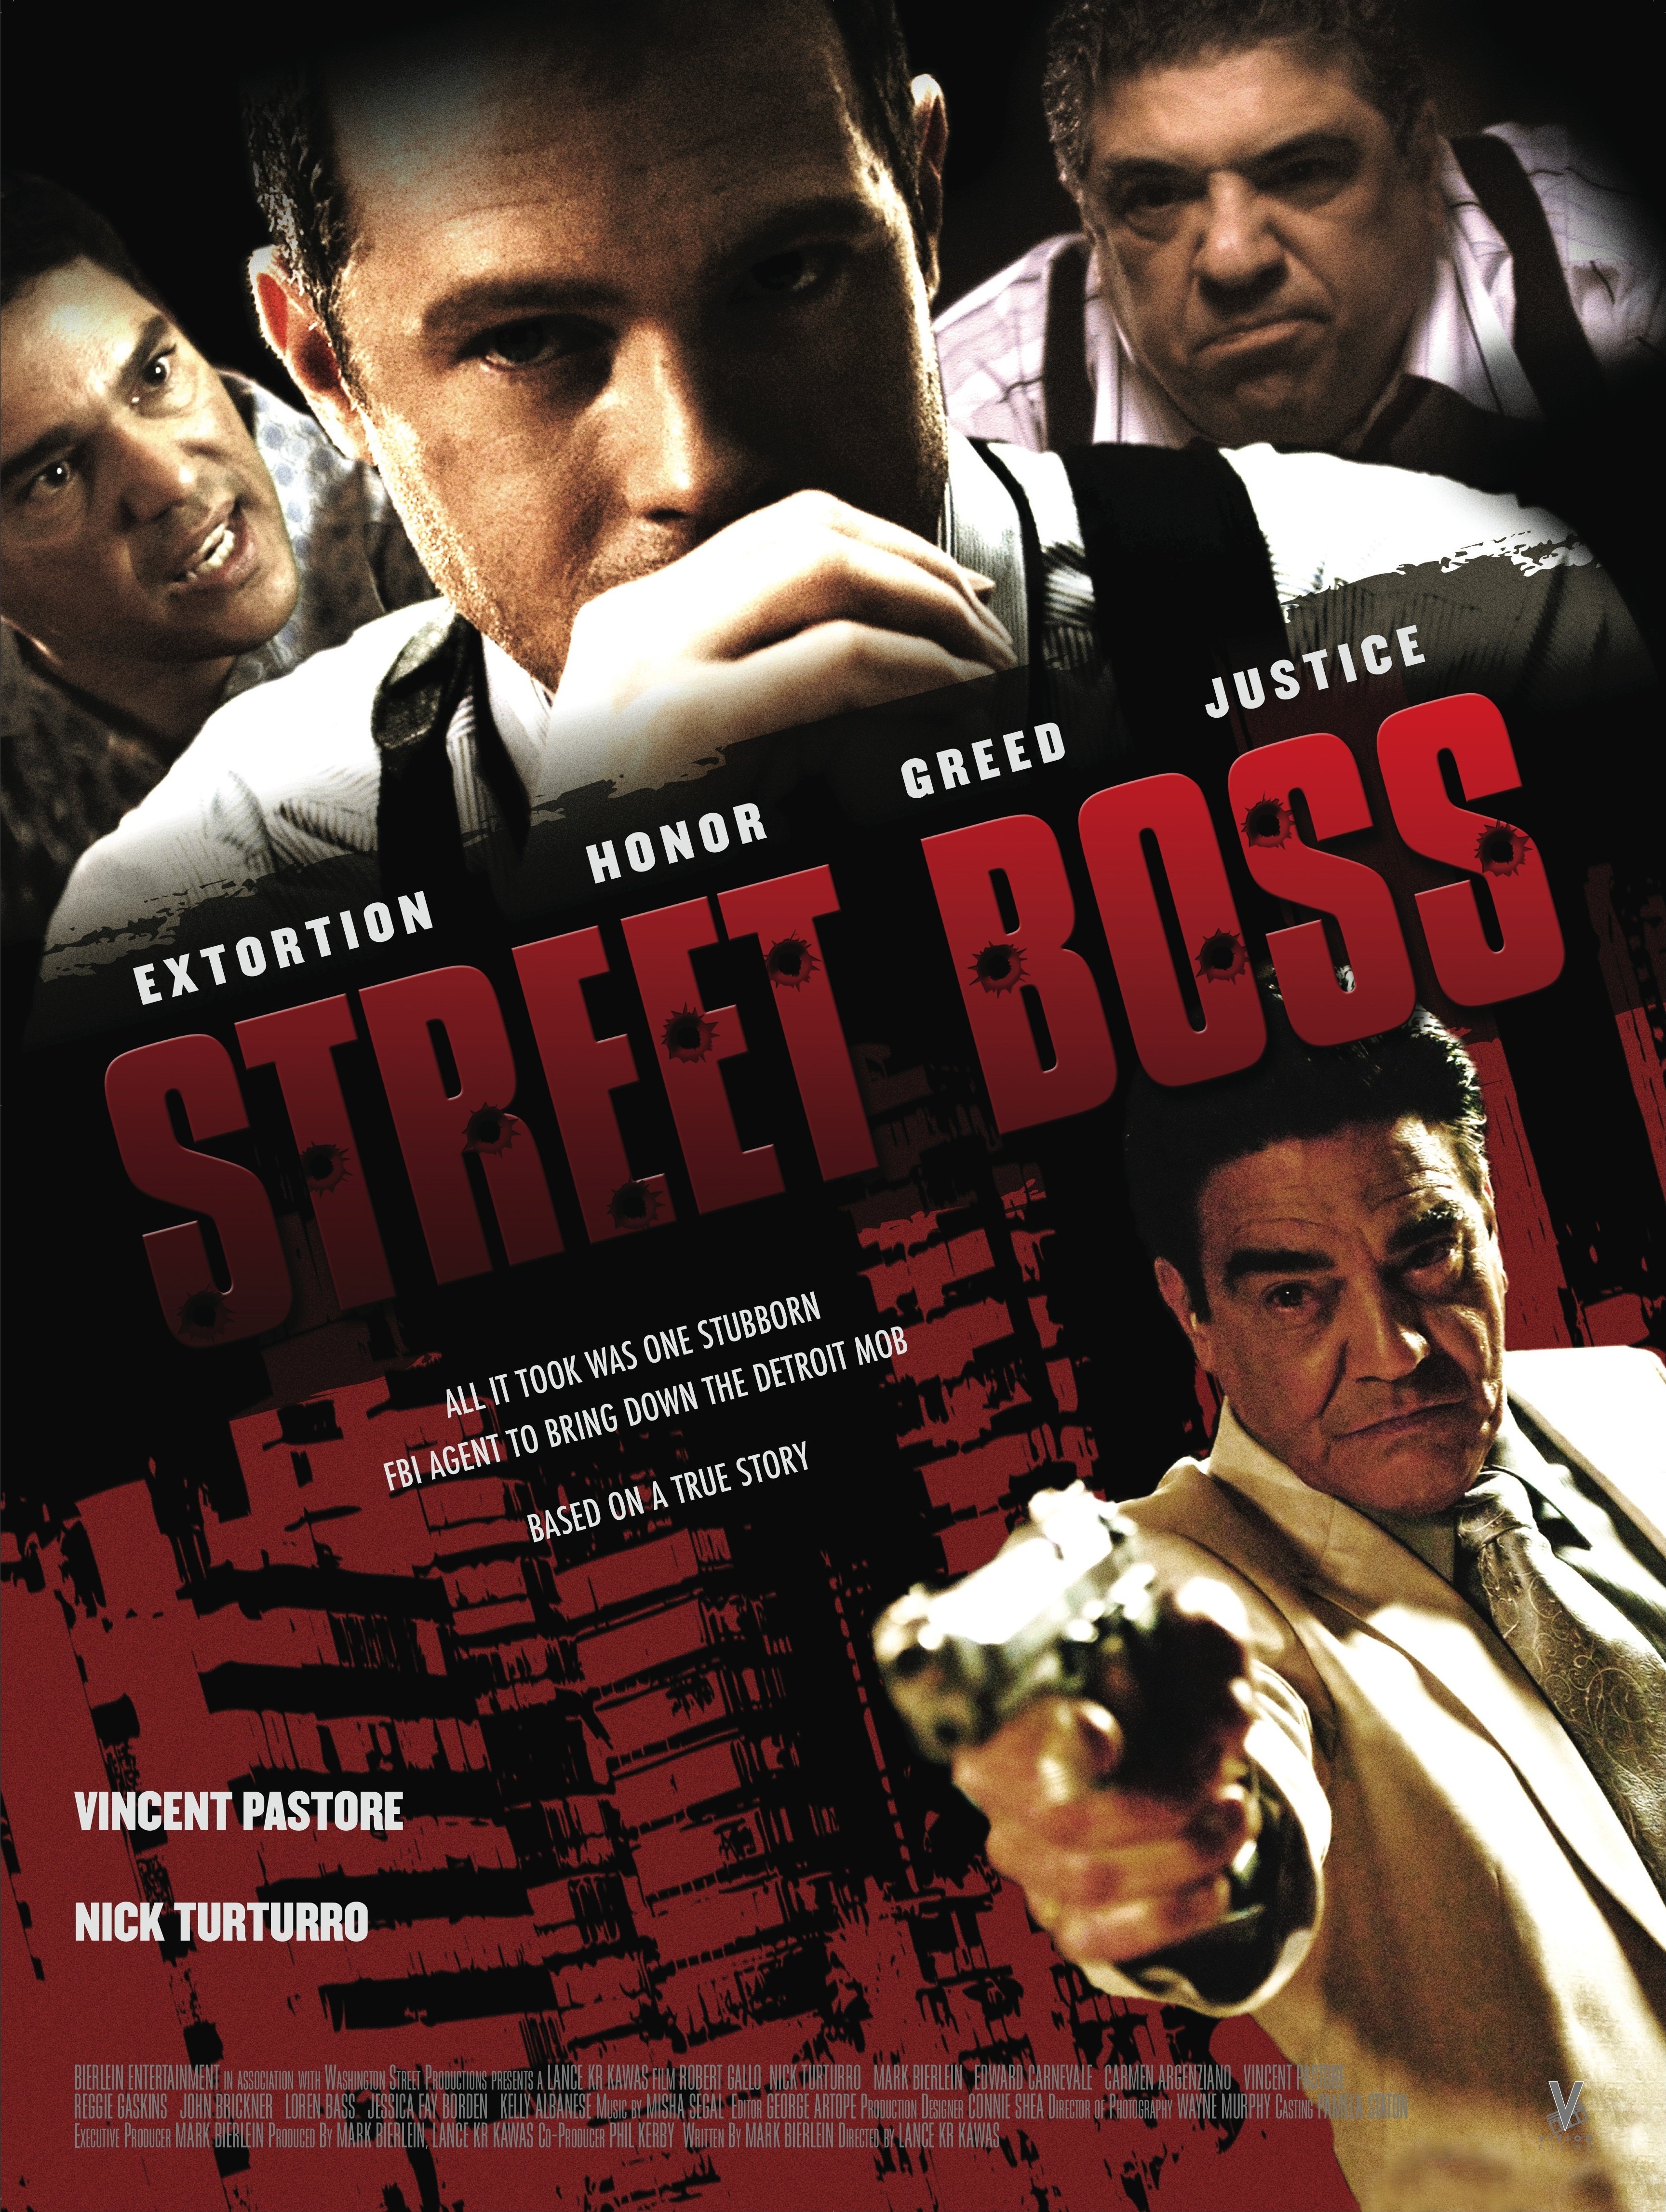 Street Boss (2009) Screenshot 3